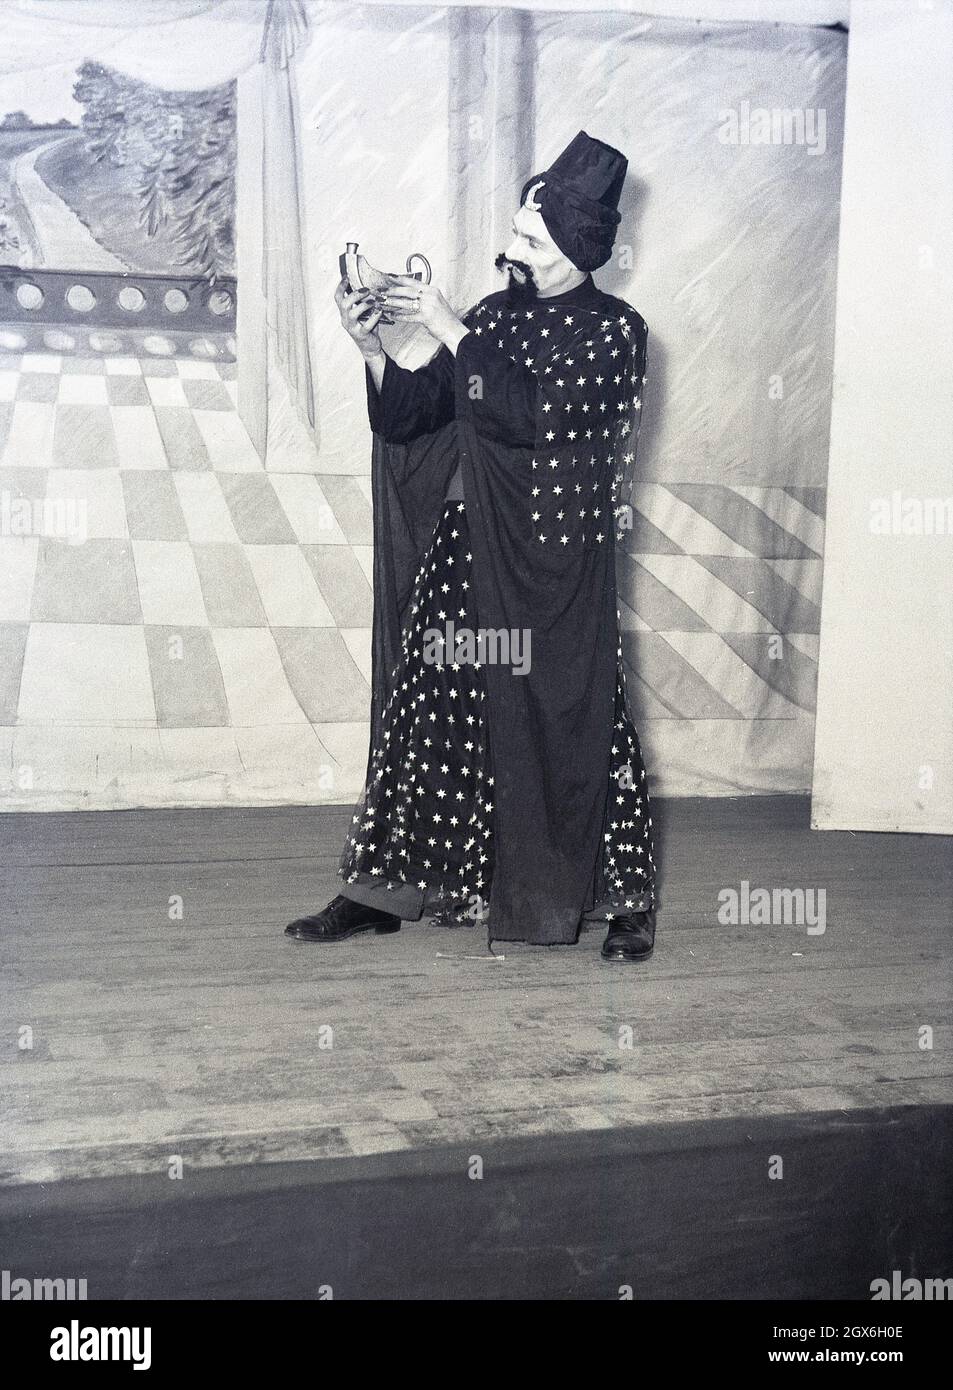 1957, historisch, ein männlicher Schauspieler auf einer Bühne in Kostümen, der den Dschinn oder Genie im Stück Aladdin spielt, basierend auf einer Volksgeschichte aus dem Nahen Osten über den Sohn einer armen Witwe in china, die Besitzer einer magischen Lampe wird, England, Großbritannien. Stockfoto